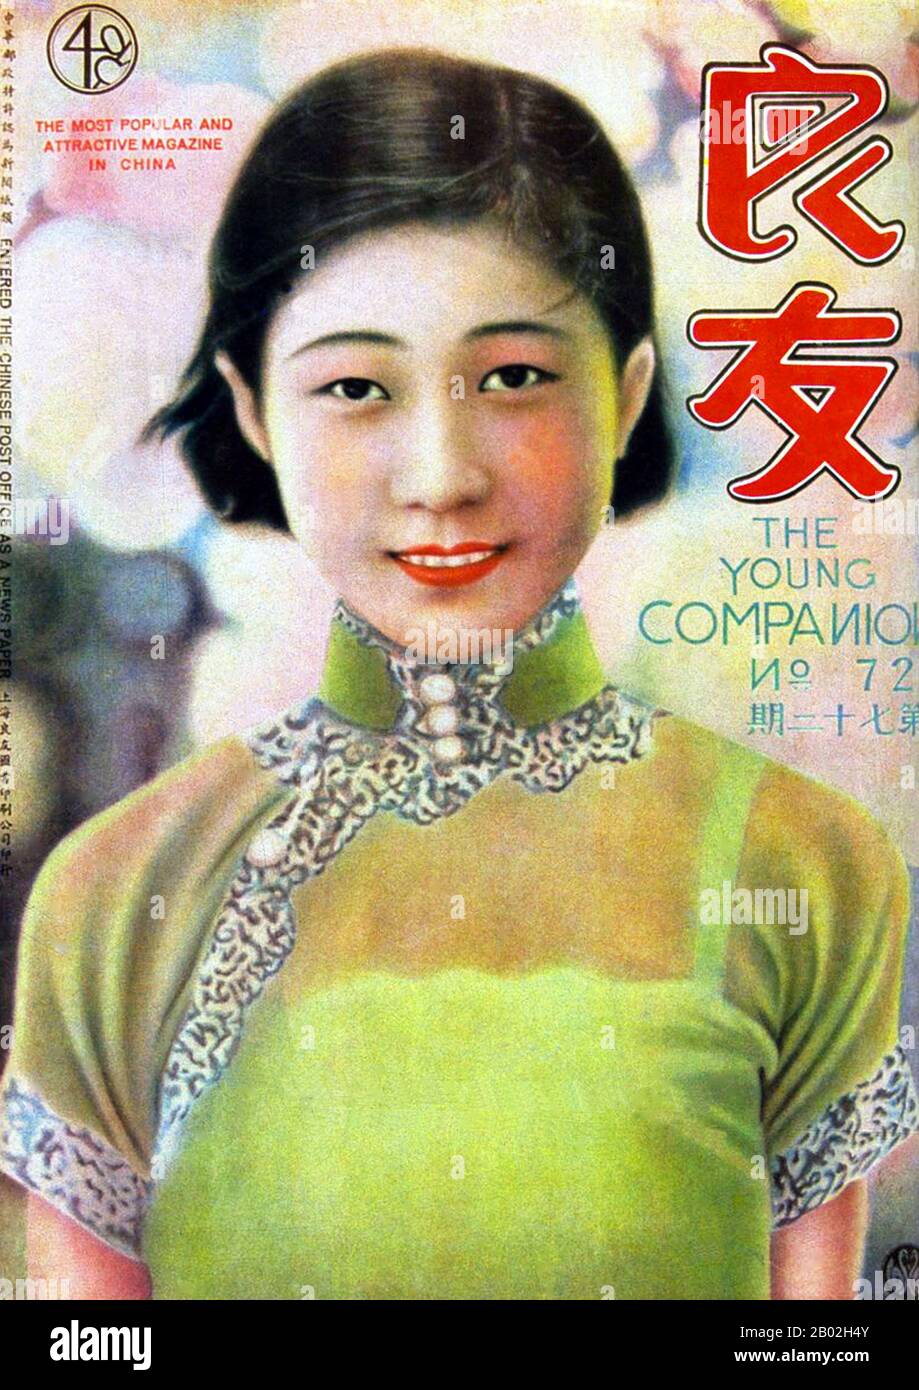 En 1926, Young Companion Pictorial (Liang You, littéralement « bon ami ») a été créé à Shanghai comme premier magazine de variété coloré. Au cours des années 1920 et 1930, lorsque les nouvelles imprimées étaient rares et précieuses, Companion était déjà un pionnier dans la fourniture de rapports picturales au public. Elle est rapidement devenue la publication qui a fait la chronique et a provoqué la passion de la Chine pendant des décennies à venir. Tout au long de l'épopée de la guerre et de la paix, les lecteurs ont pu voir et lire de Companion les visages et les pensées des politiciens influents tels que Sun Zhongshan (Sun Yat-sen), Jiang Jieshi (Chiang Kai-shek), Feng Yuxiang, Zh Banque D'Images